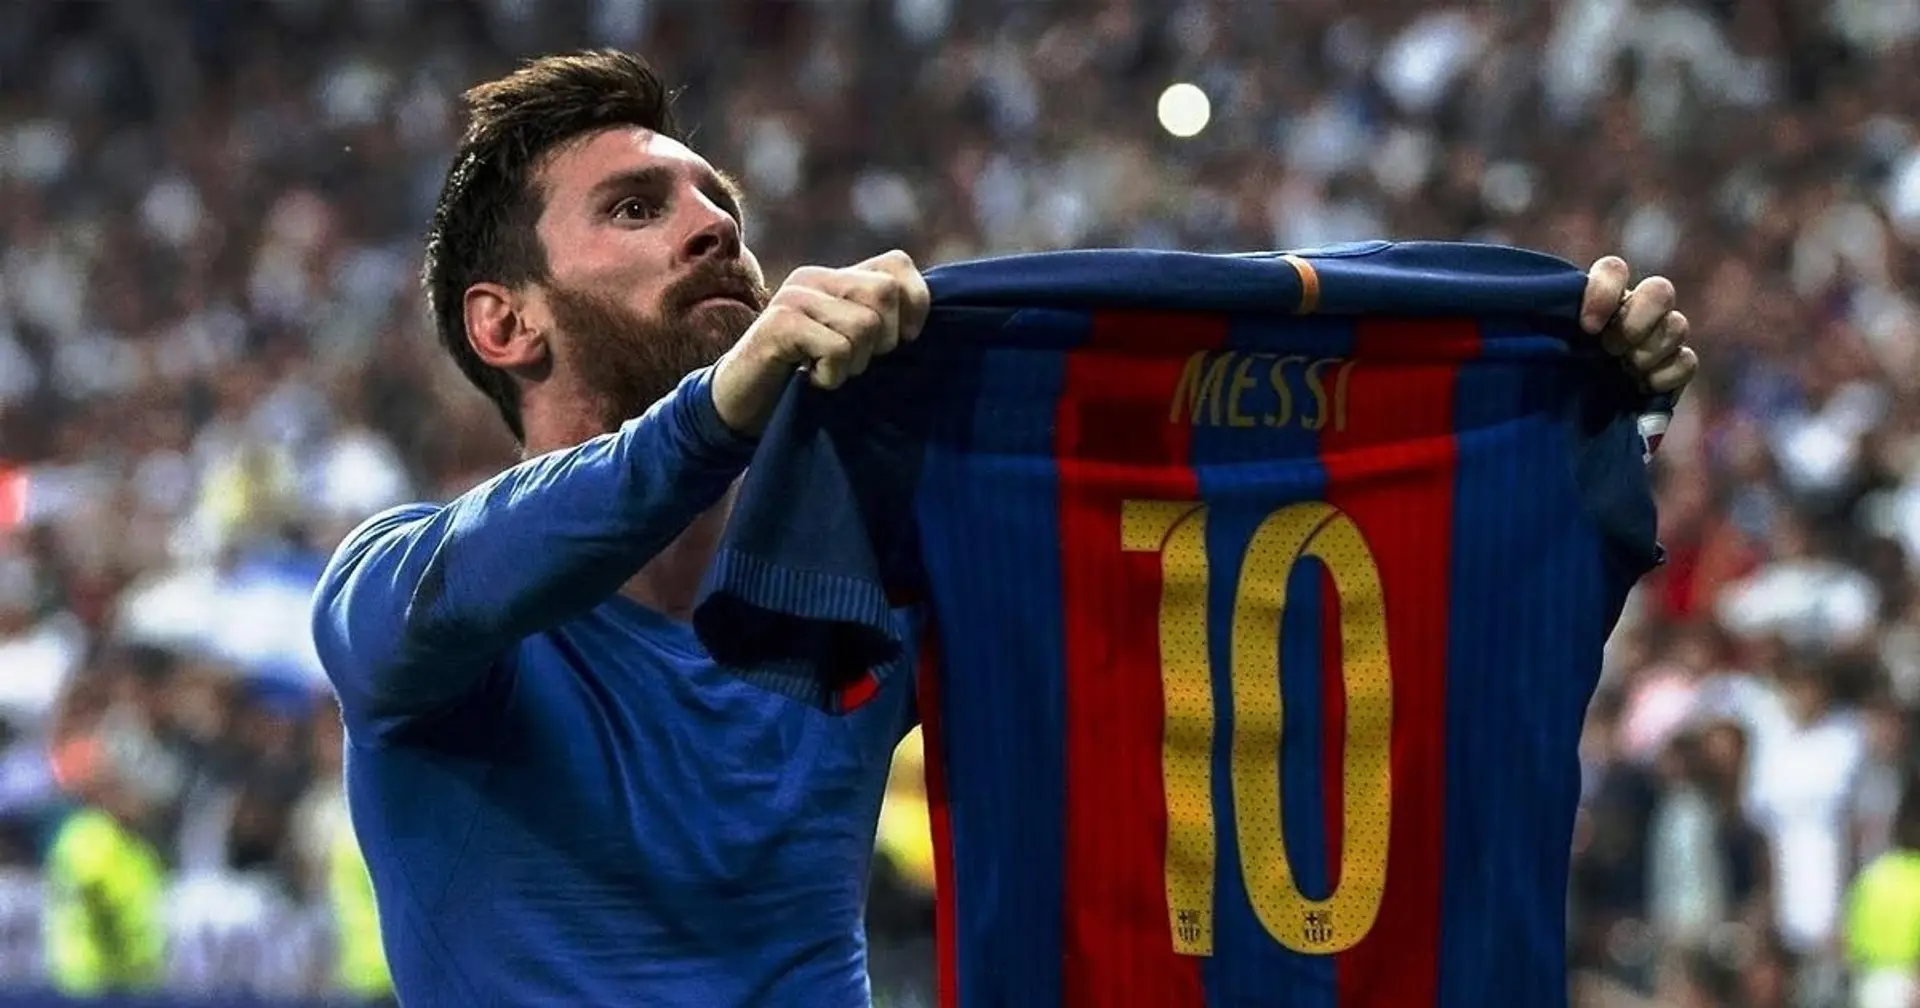 2 momentos de Leo Messi y dos estrellas más del fútbol moderno mostraron su espíritu de lucha, y a los fanáticos les encantó